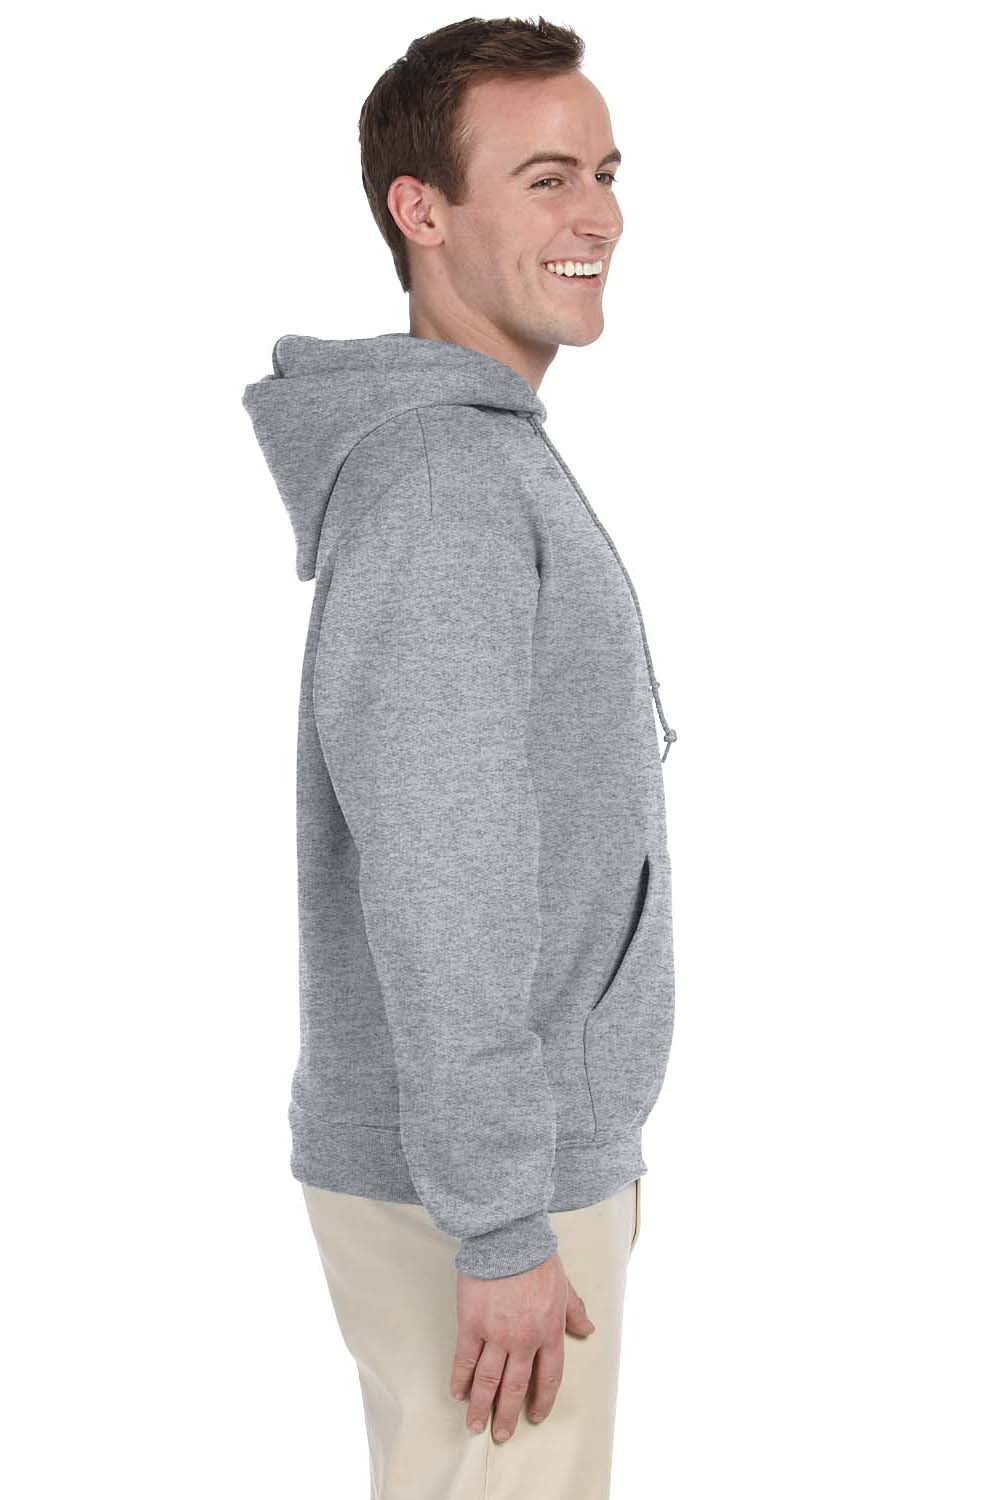 Jerzees 996 Mens NuBlend Fleece Hooded Sweatshirt Hoodie Oxford Grey Side